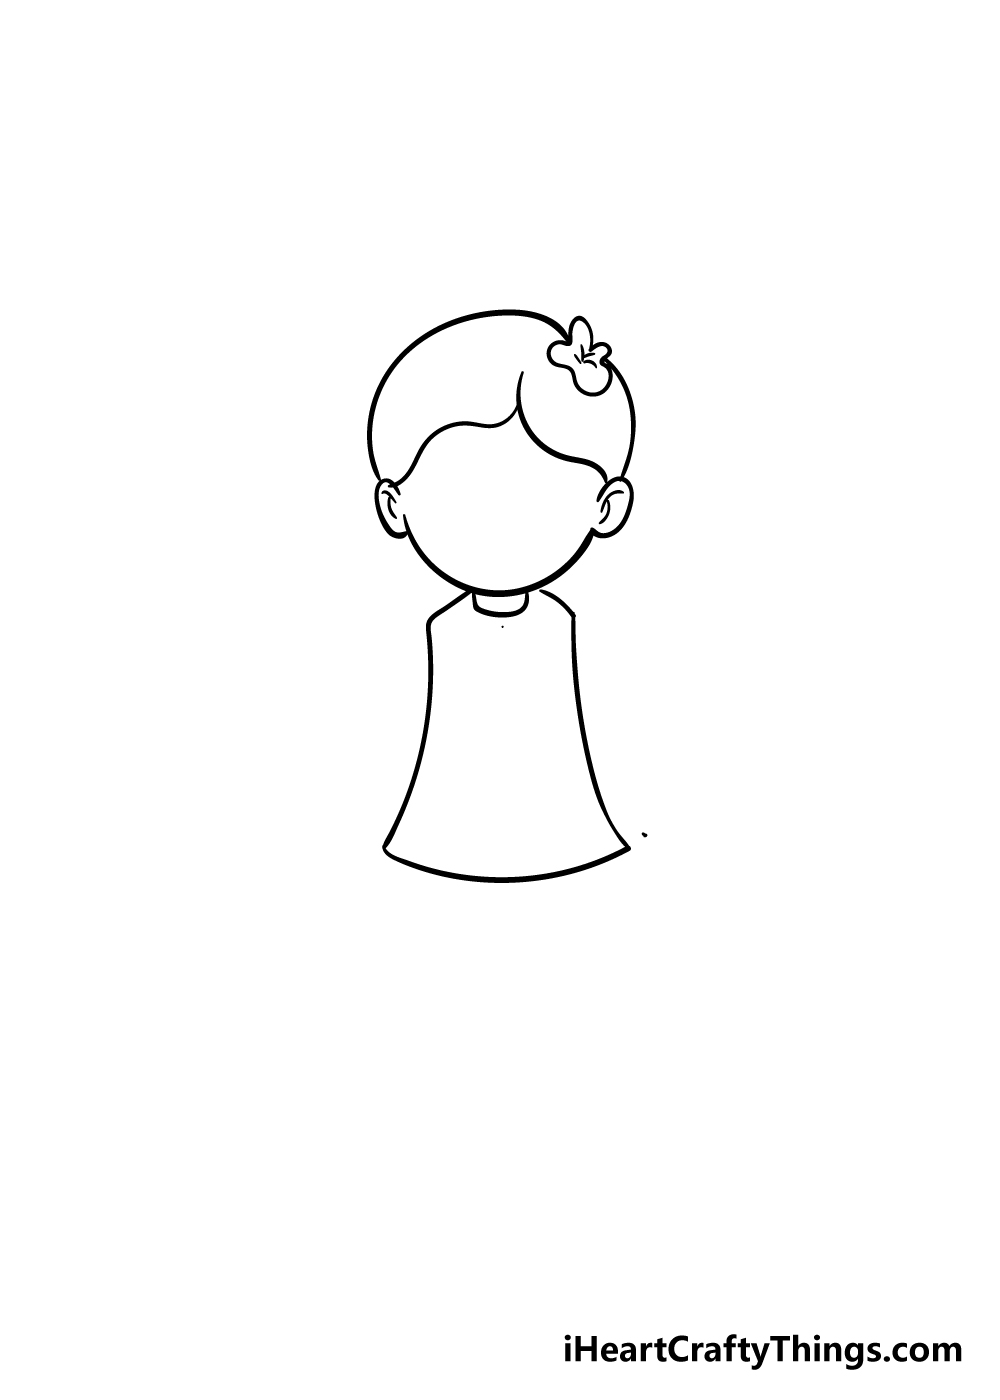 Kuromi Pencil Drawing Animation GIF | GIFDB.com